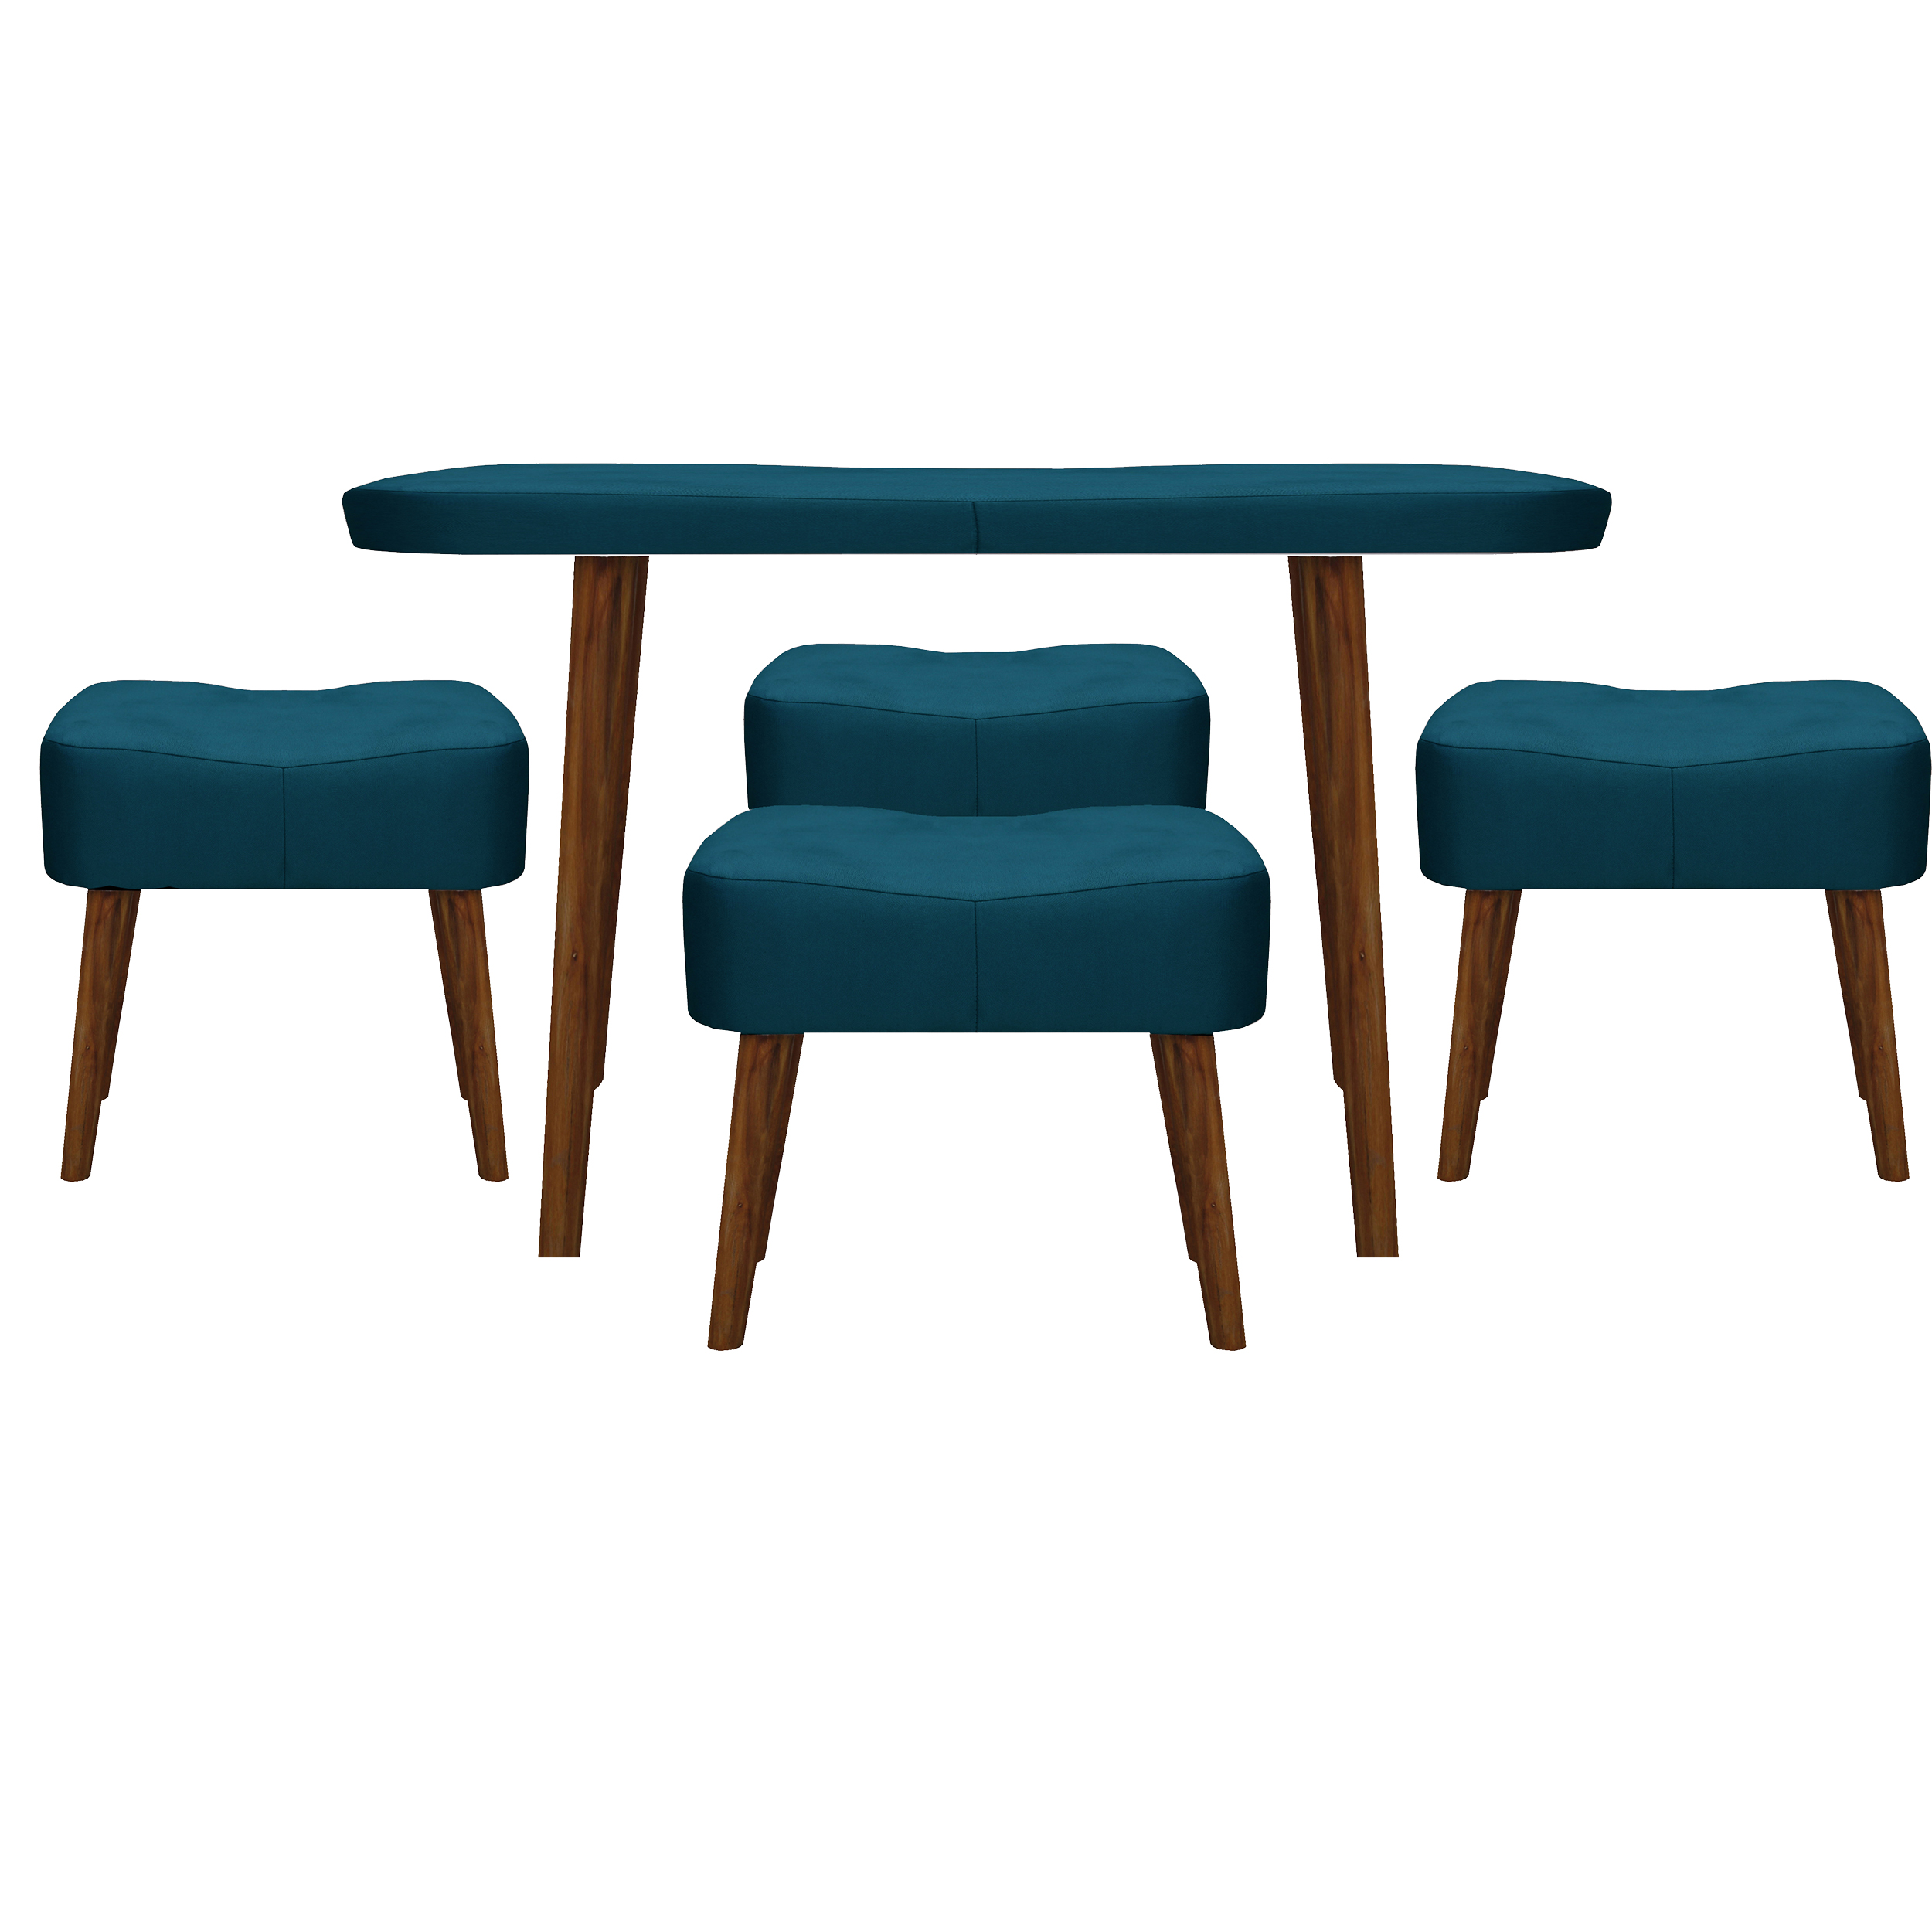 میز و صندلی ناهارخوری مدل kamja-1185 کد 313-2080